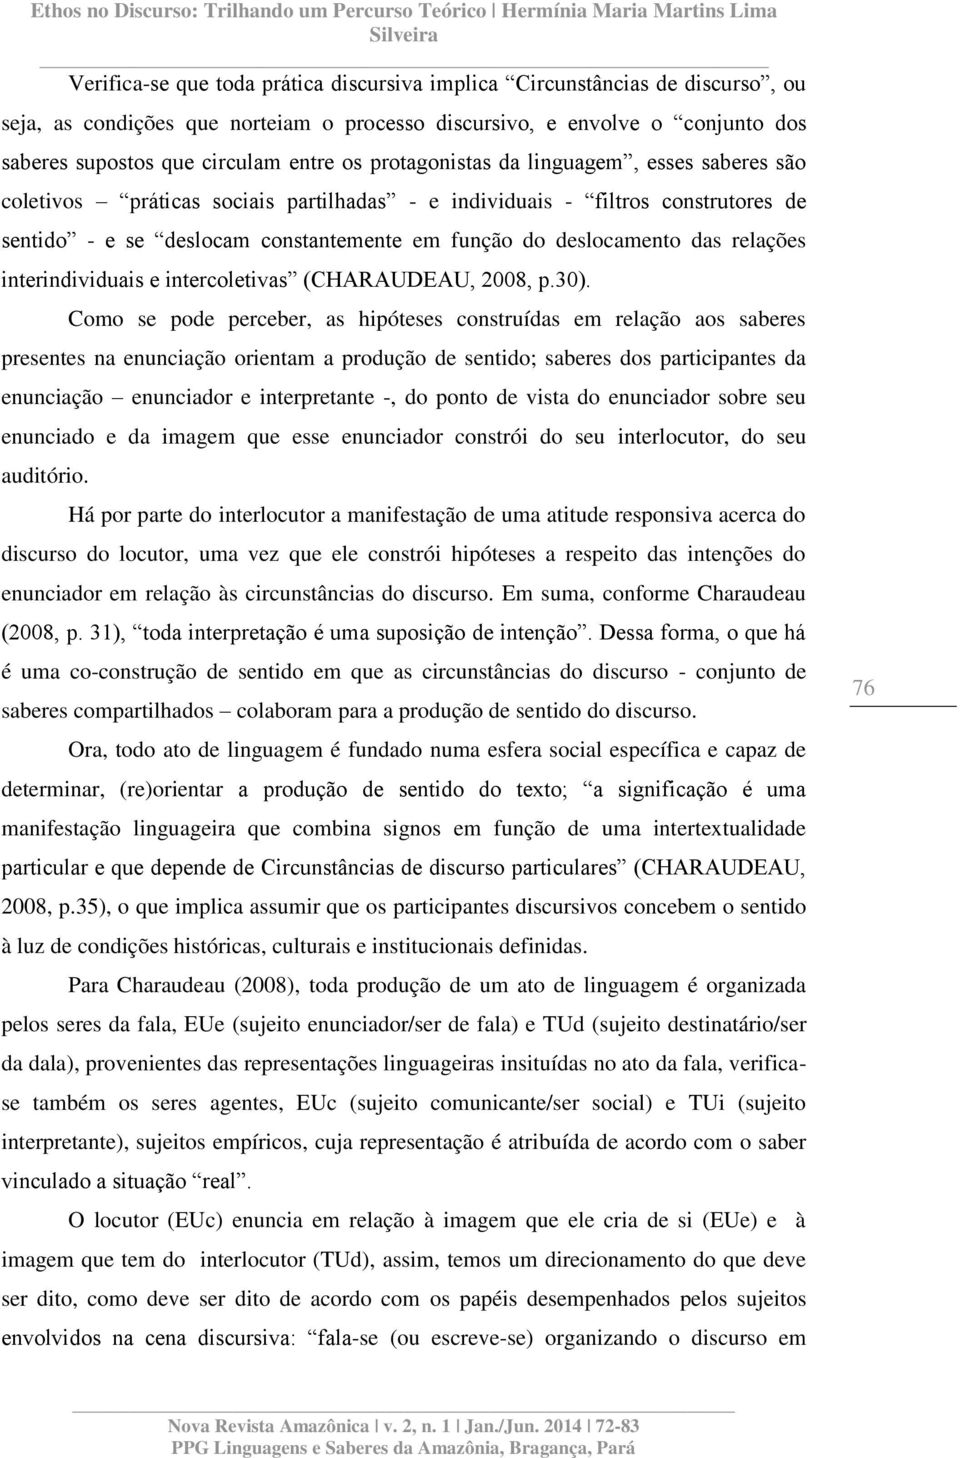 relações interindividuais e intercoletivas (CHARAUDEAU, 2008, p.30).